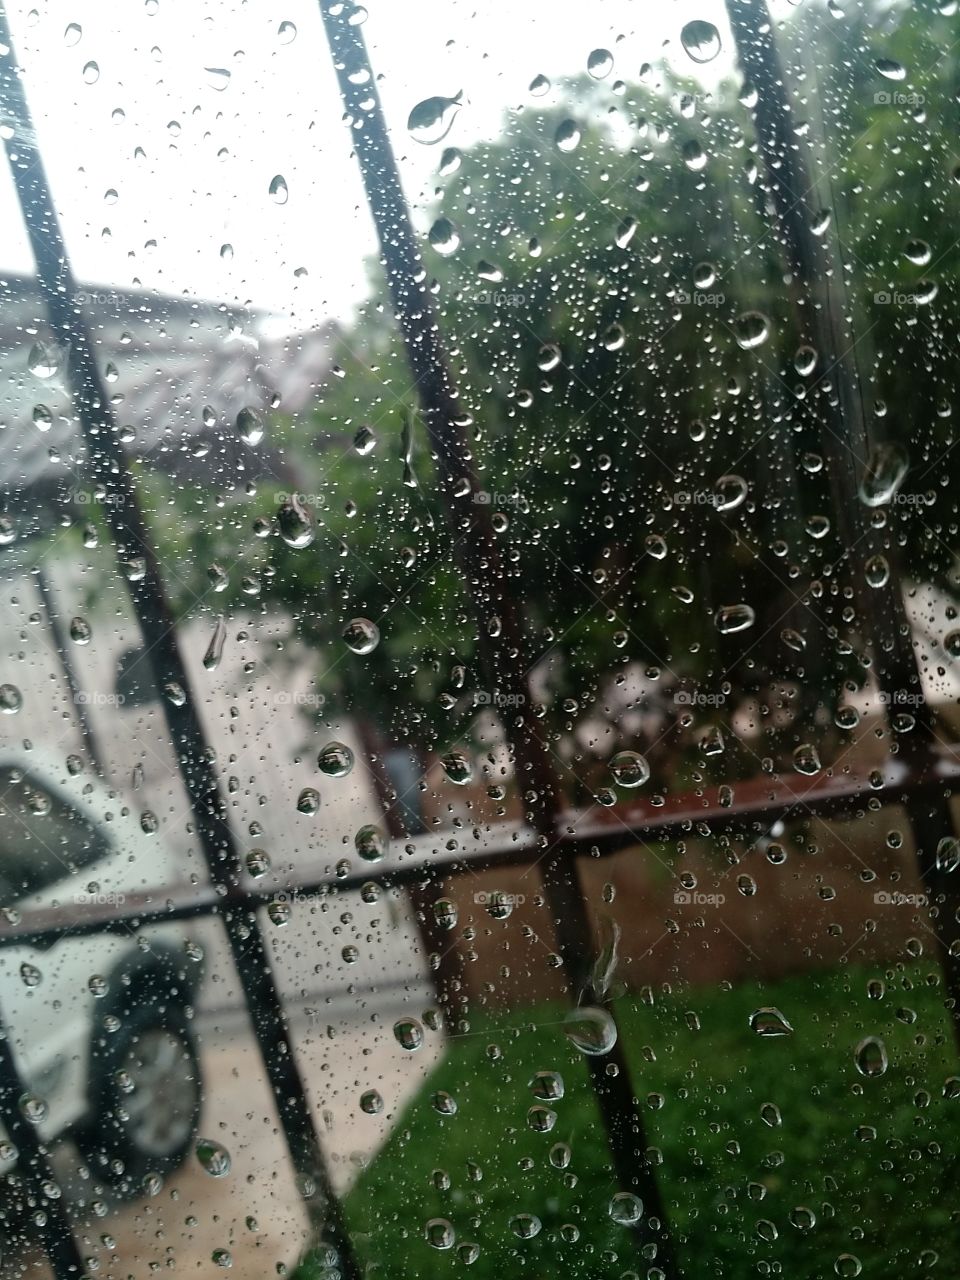 rain in the window